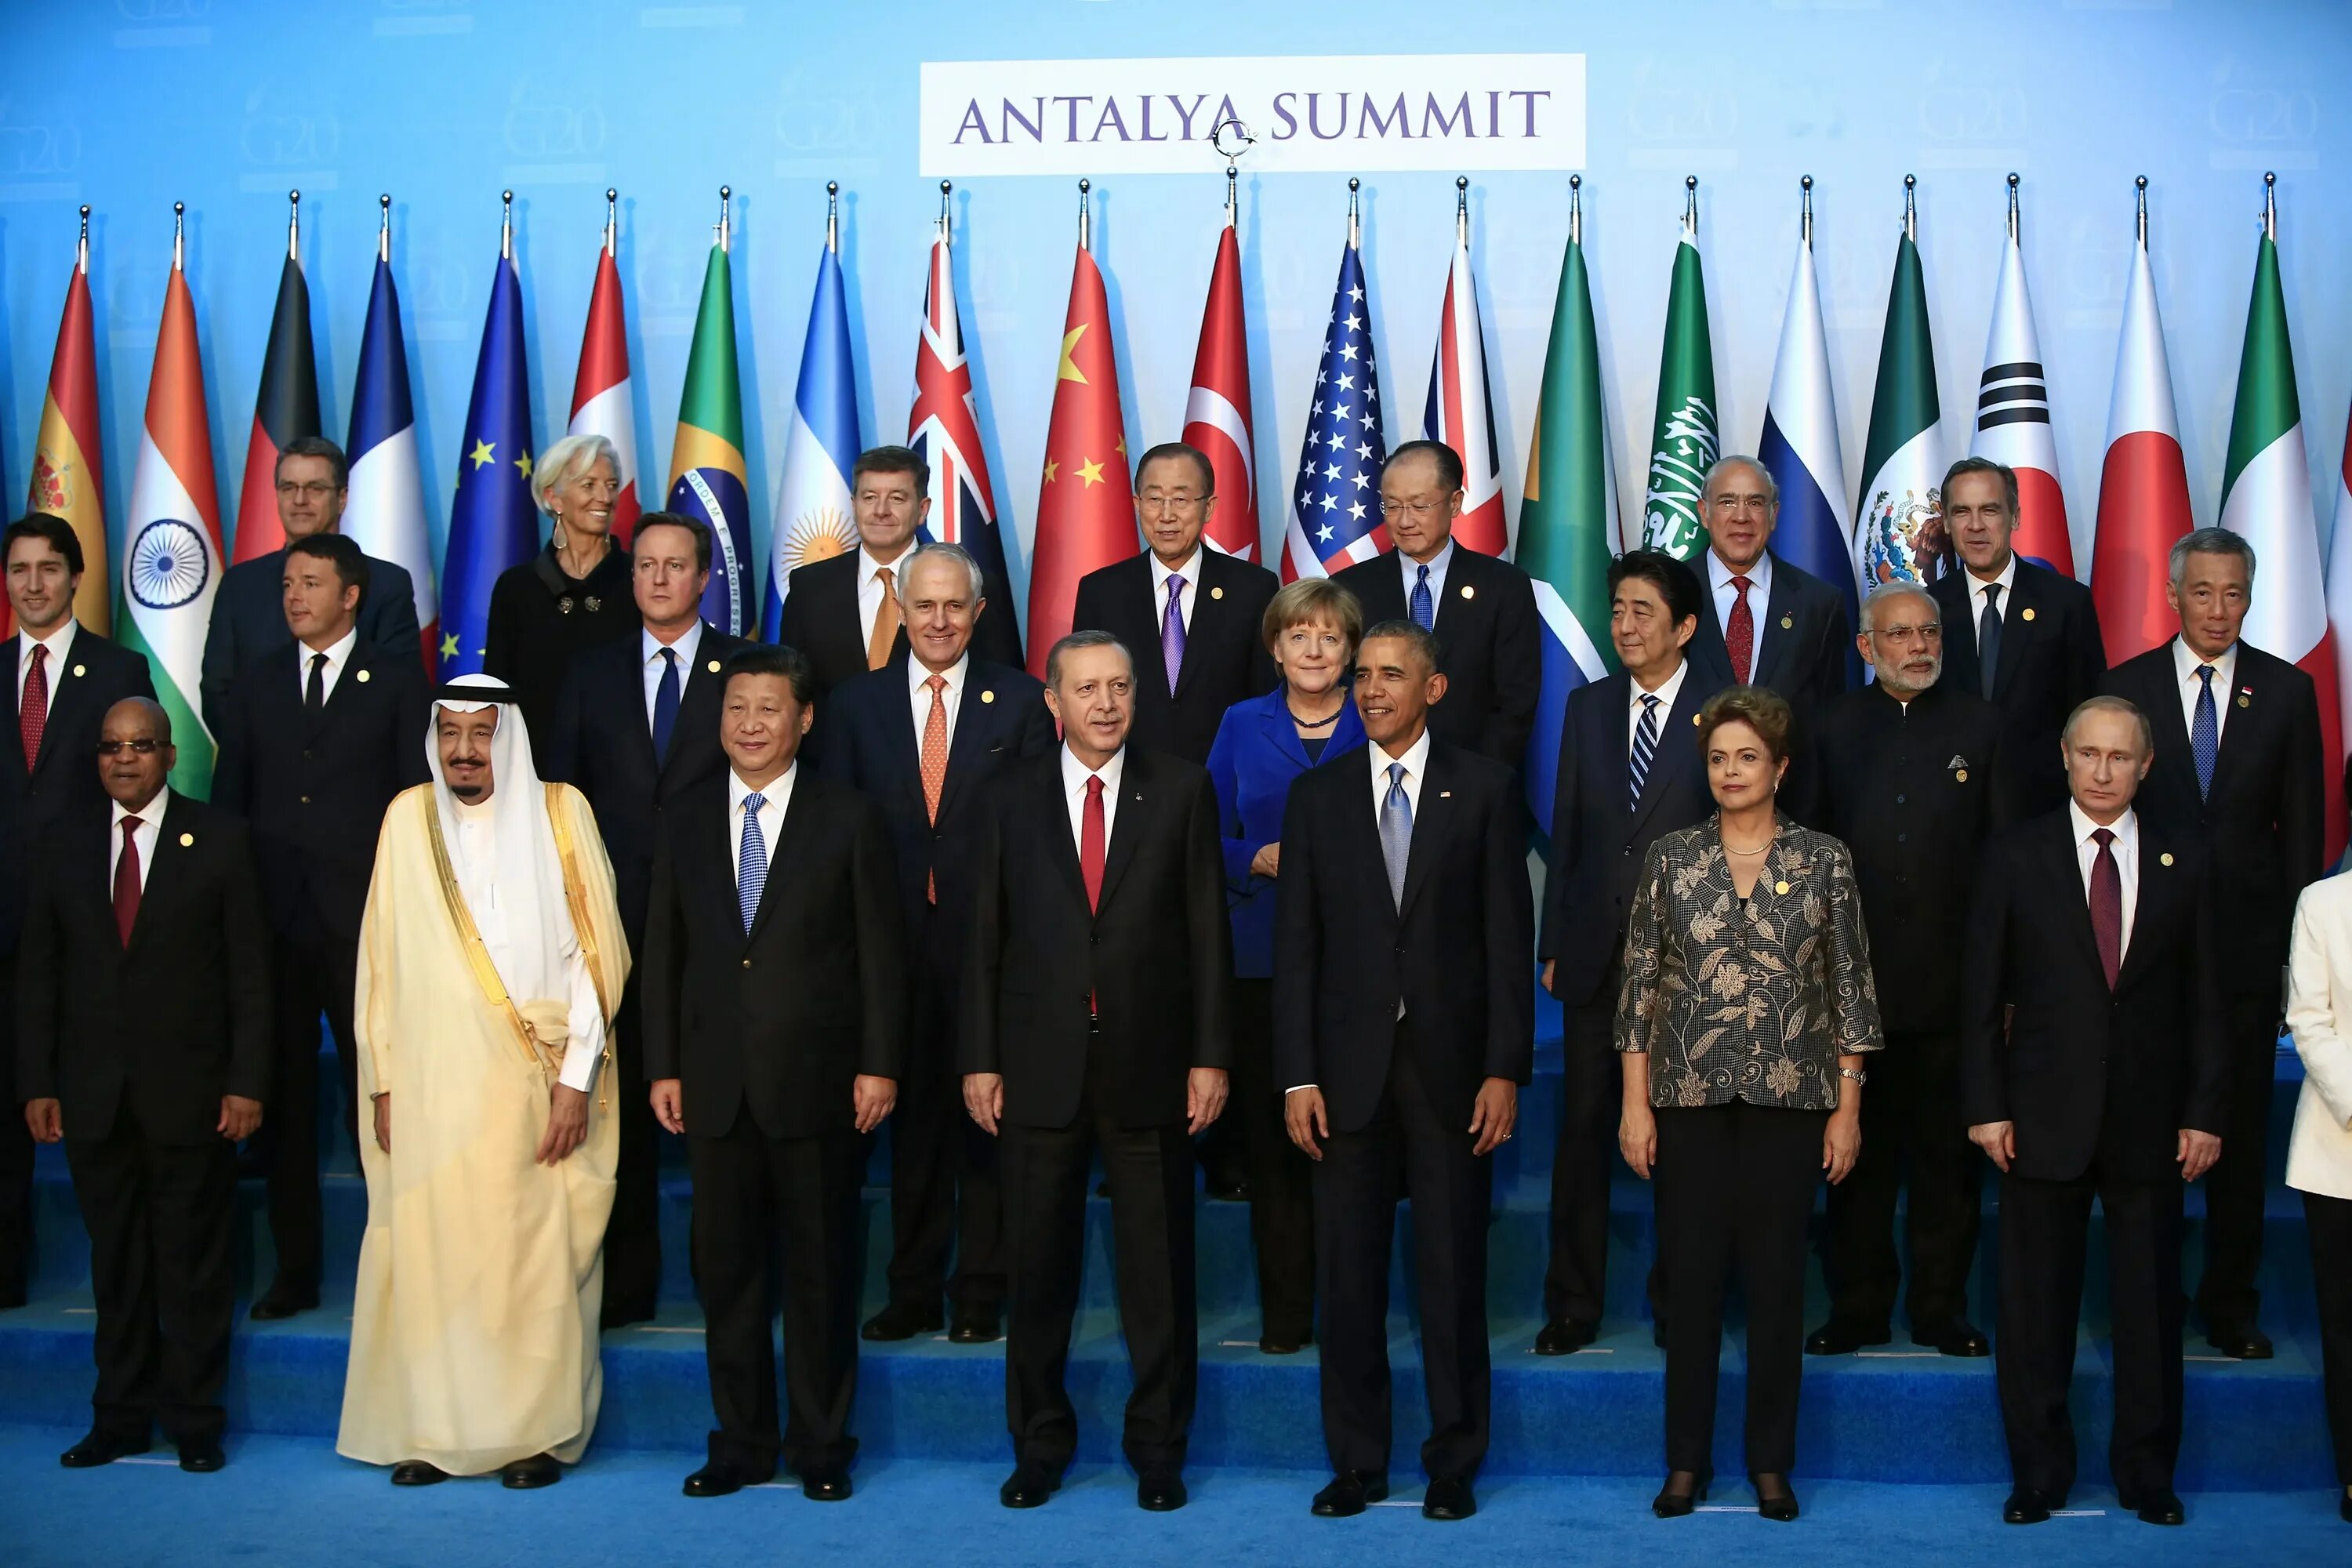 Имена лидеров стран участвующих в конференции. Sammit b20 g20. Саммит g20 2029. Саммит g20 2001. G20 2021.